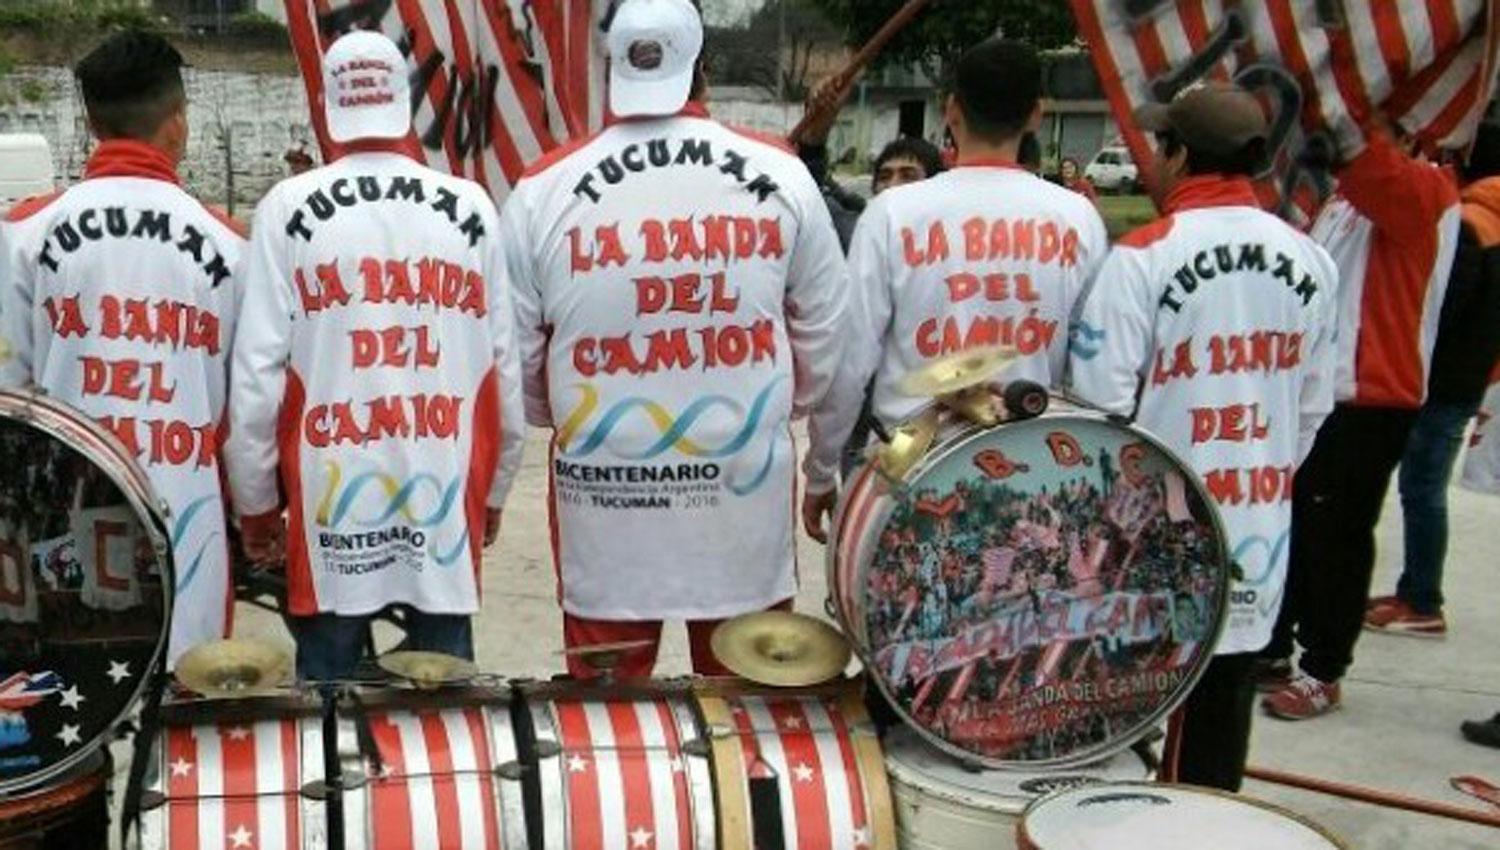 POLÉMICO PATROCINIO. Los miembros de “La Banda del Camión” muestran camperones que tienen el logo oficial que utilizó la provincia para celebrar el Bicentenario de la Declaración de la Independencia.